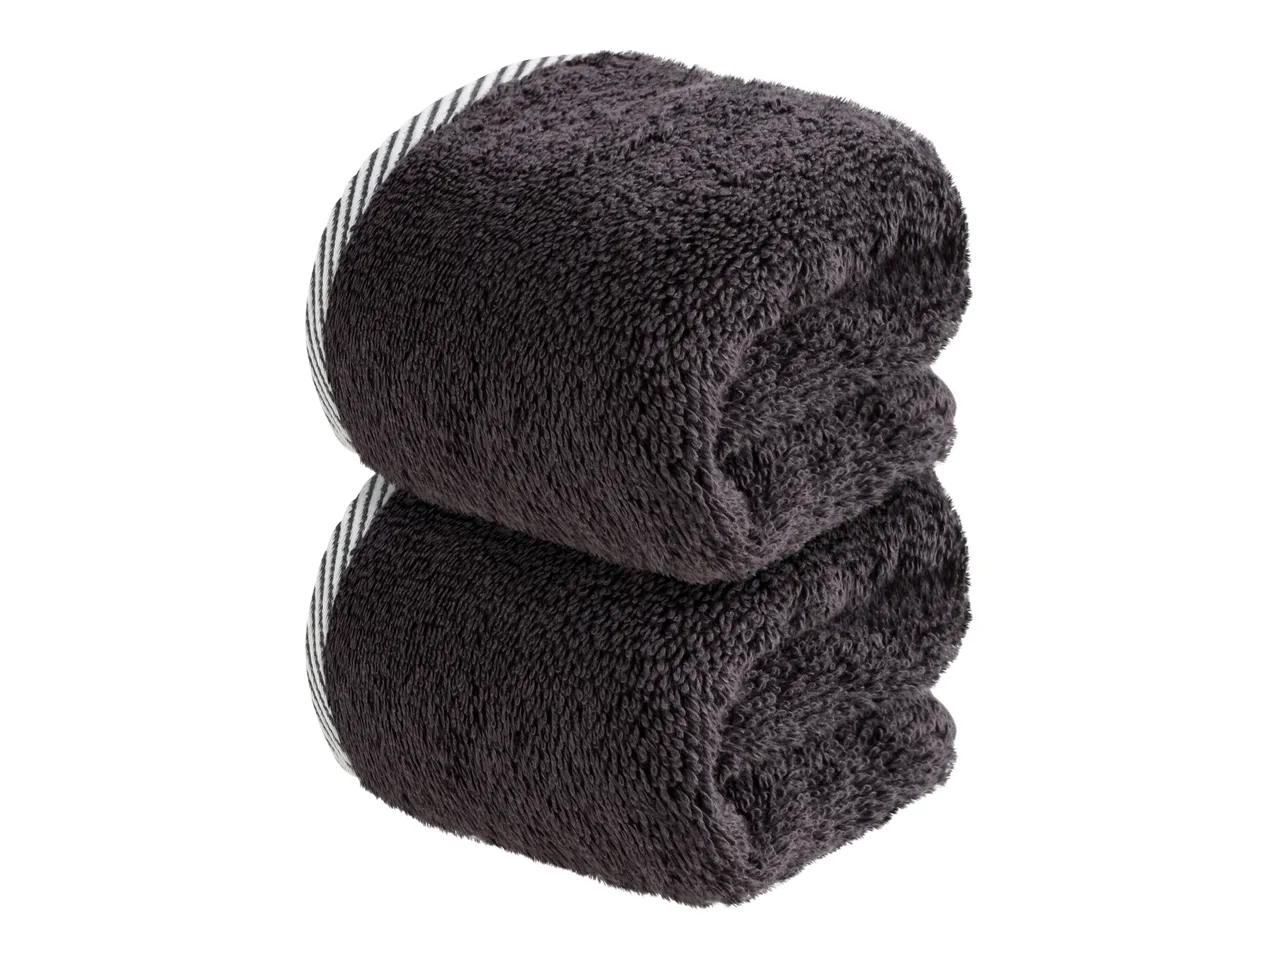 Asciugamano , prezzo 2.99 EUR  
Asciugamano  2 pezzi, 30x50 cm  
-  Puro cotone